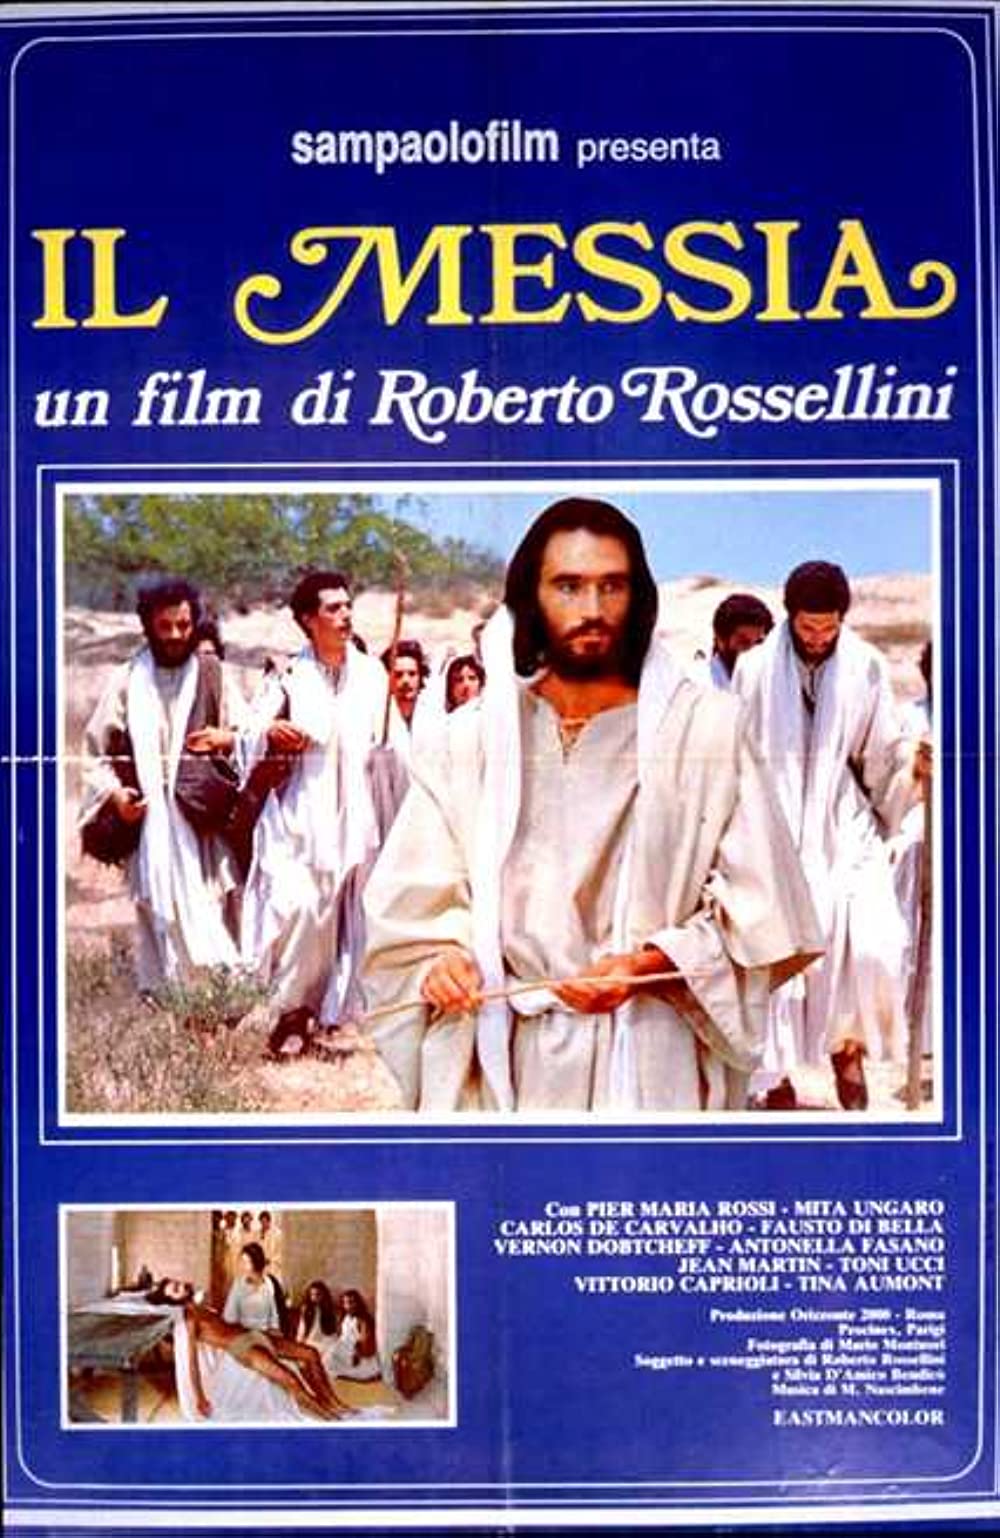 Filmbeschreibung zu Der Messias